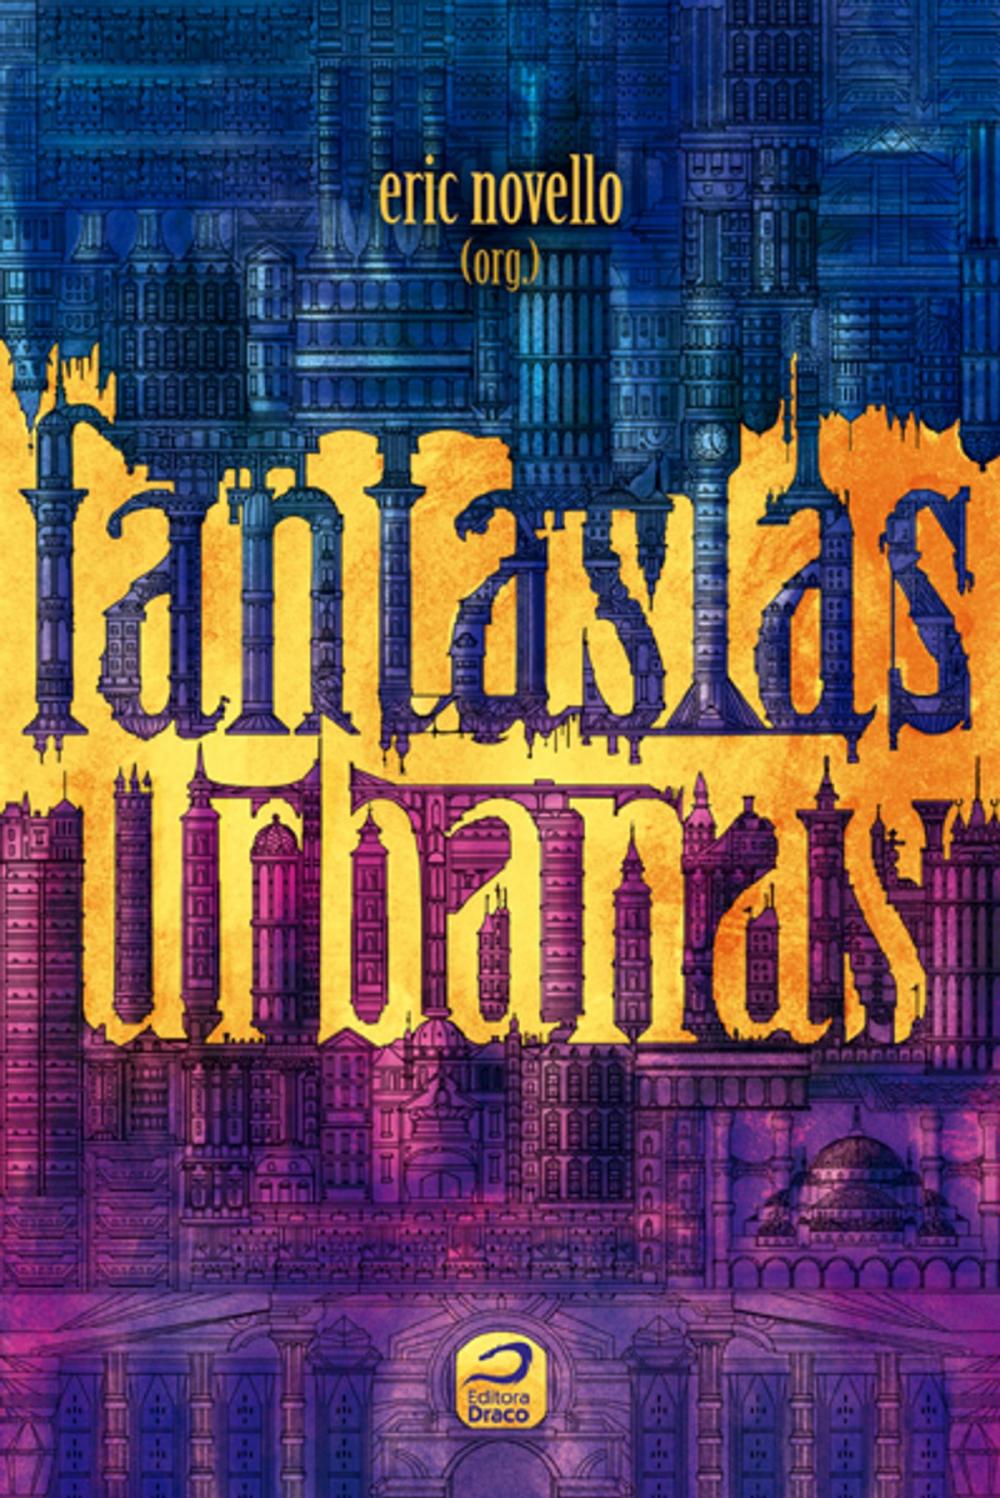 Big bigCover of Fantasias Urbanas